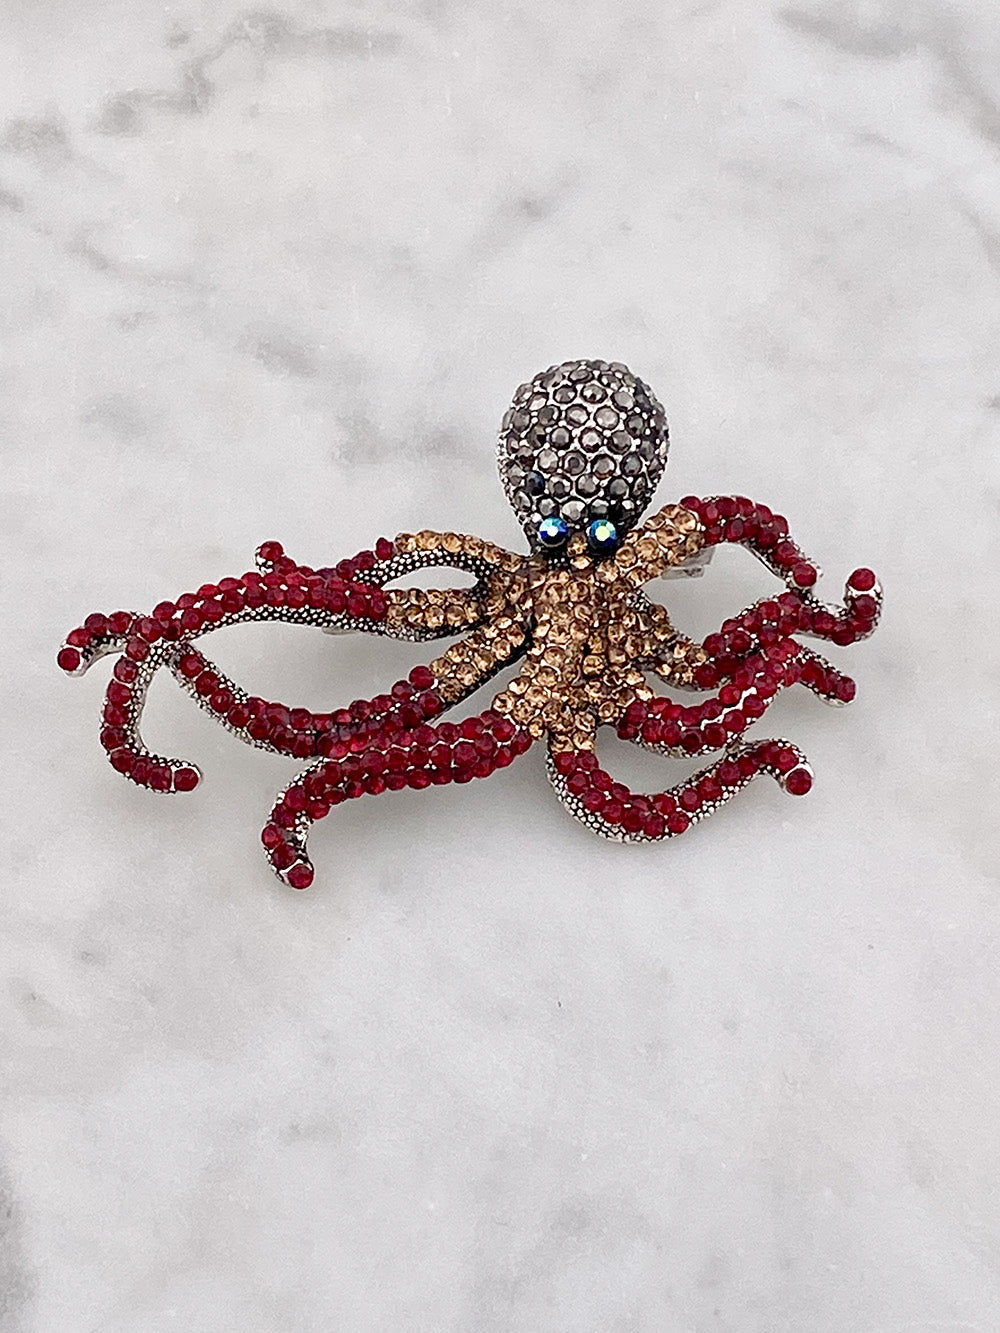 Octopus brooch in bronze